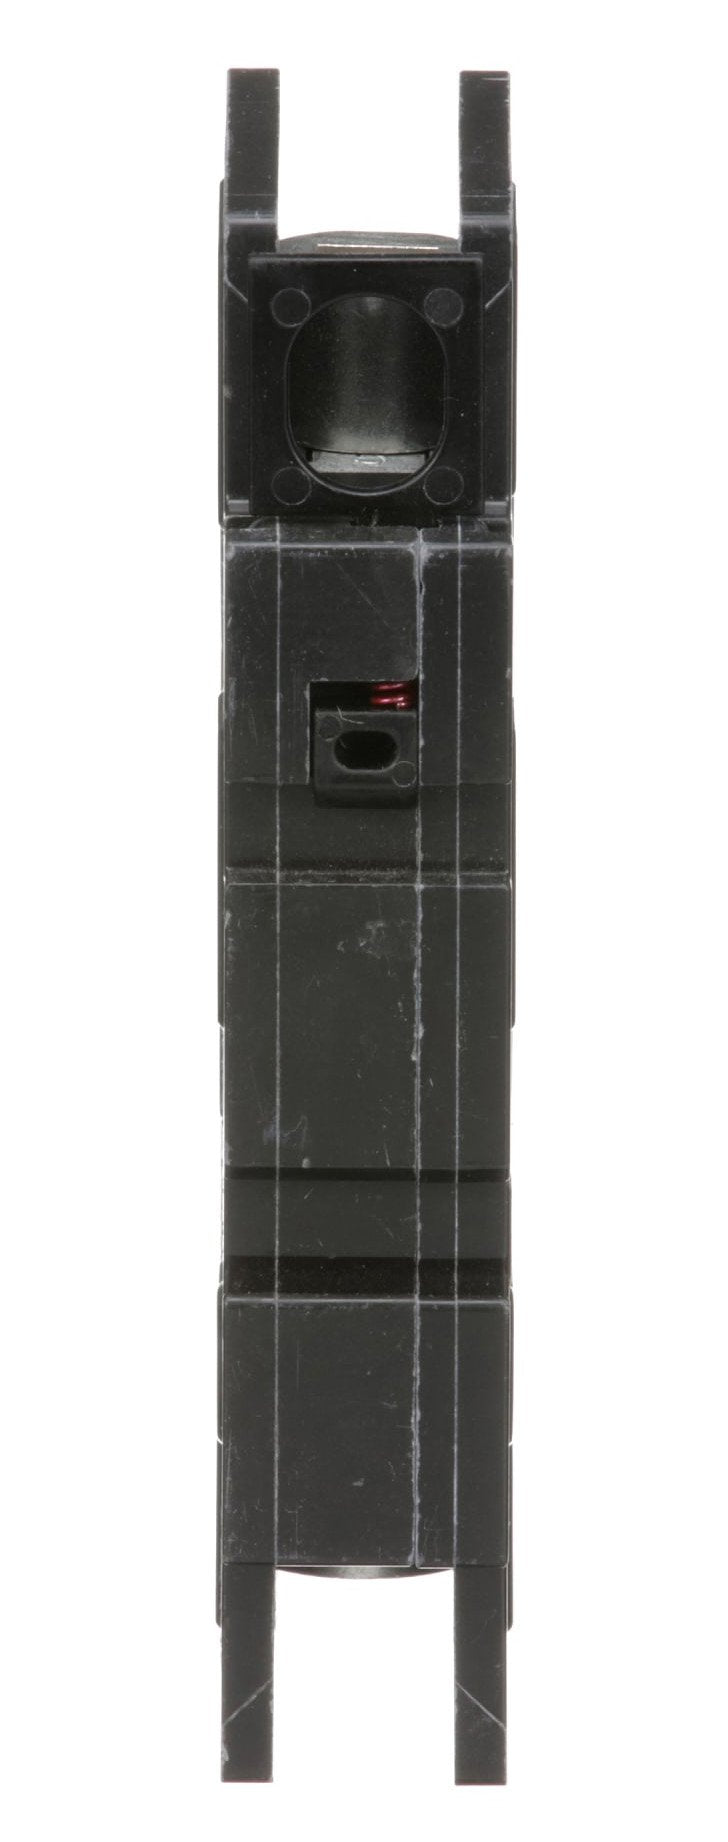 QOU170 - Square D - 70 Amp Circuit Breaker